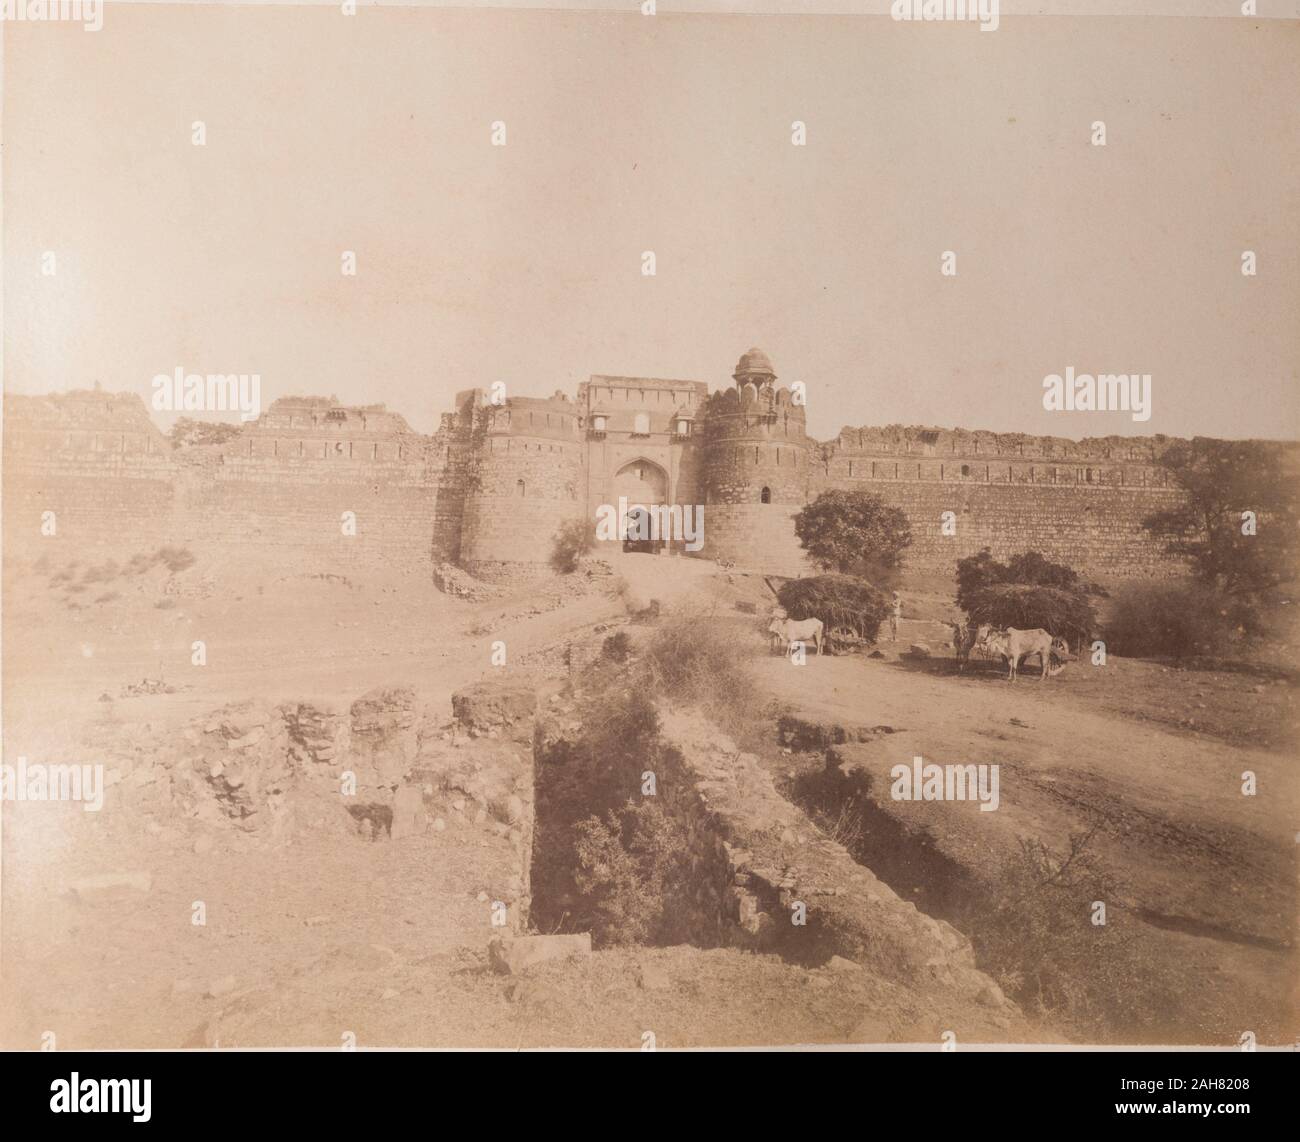 Indien, Vieh-gezogenen Karren beladen mit Heu stand außerhalb des verfallenen Mauern in einem alten Teil der Stadt. Originalmanuskript Bildunterschrift: Teil von Old Delhi, circa 1890. 2003/071/1/1/2/58. Stockfoto